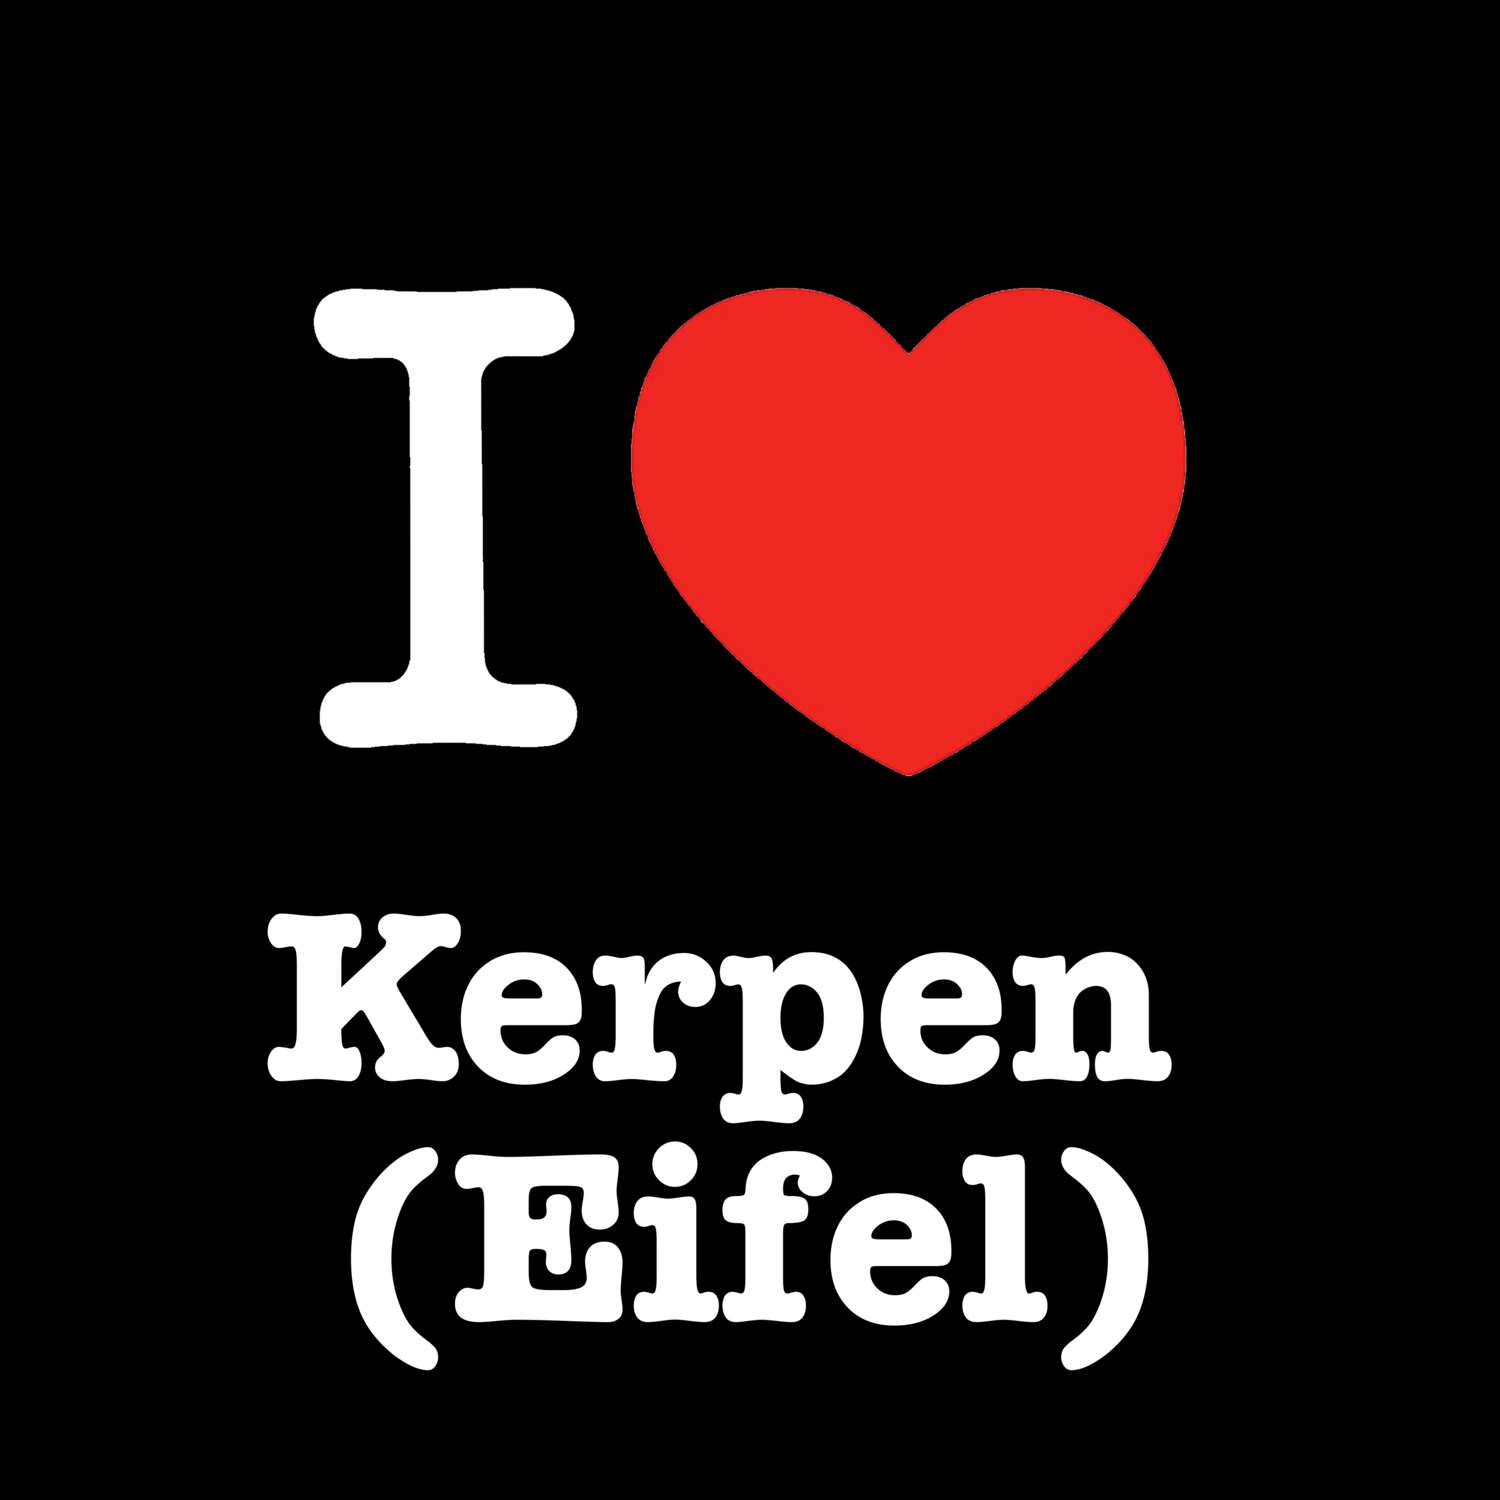 Kerpen (Eifel) T-Shirt »I love«